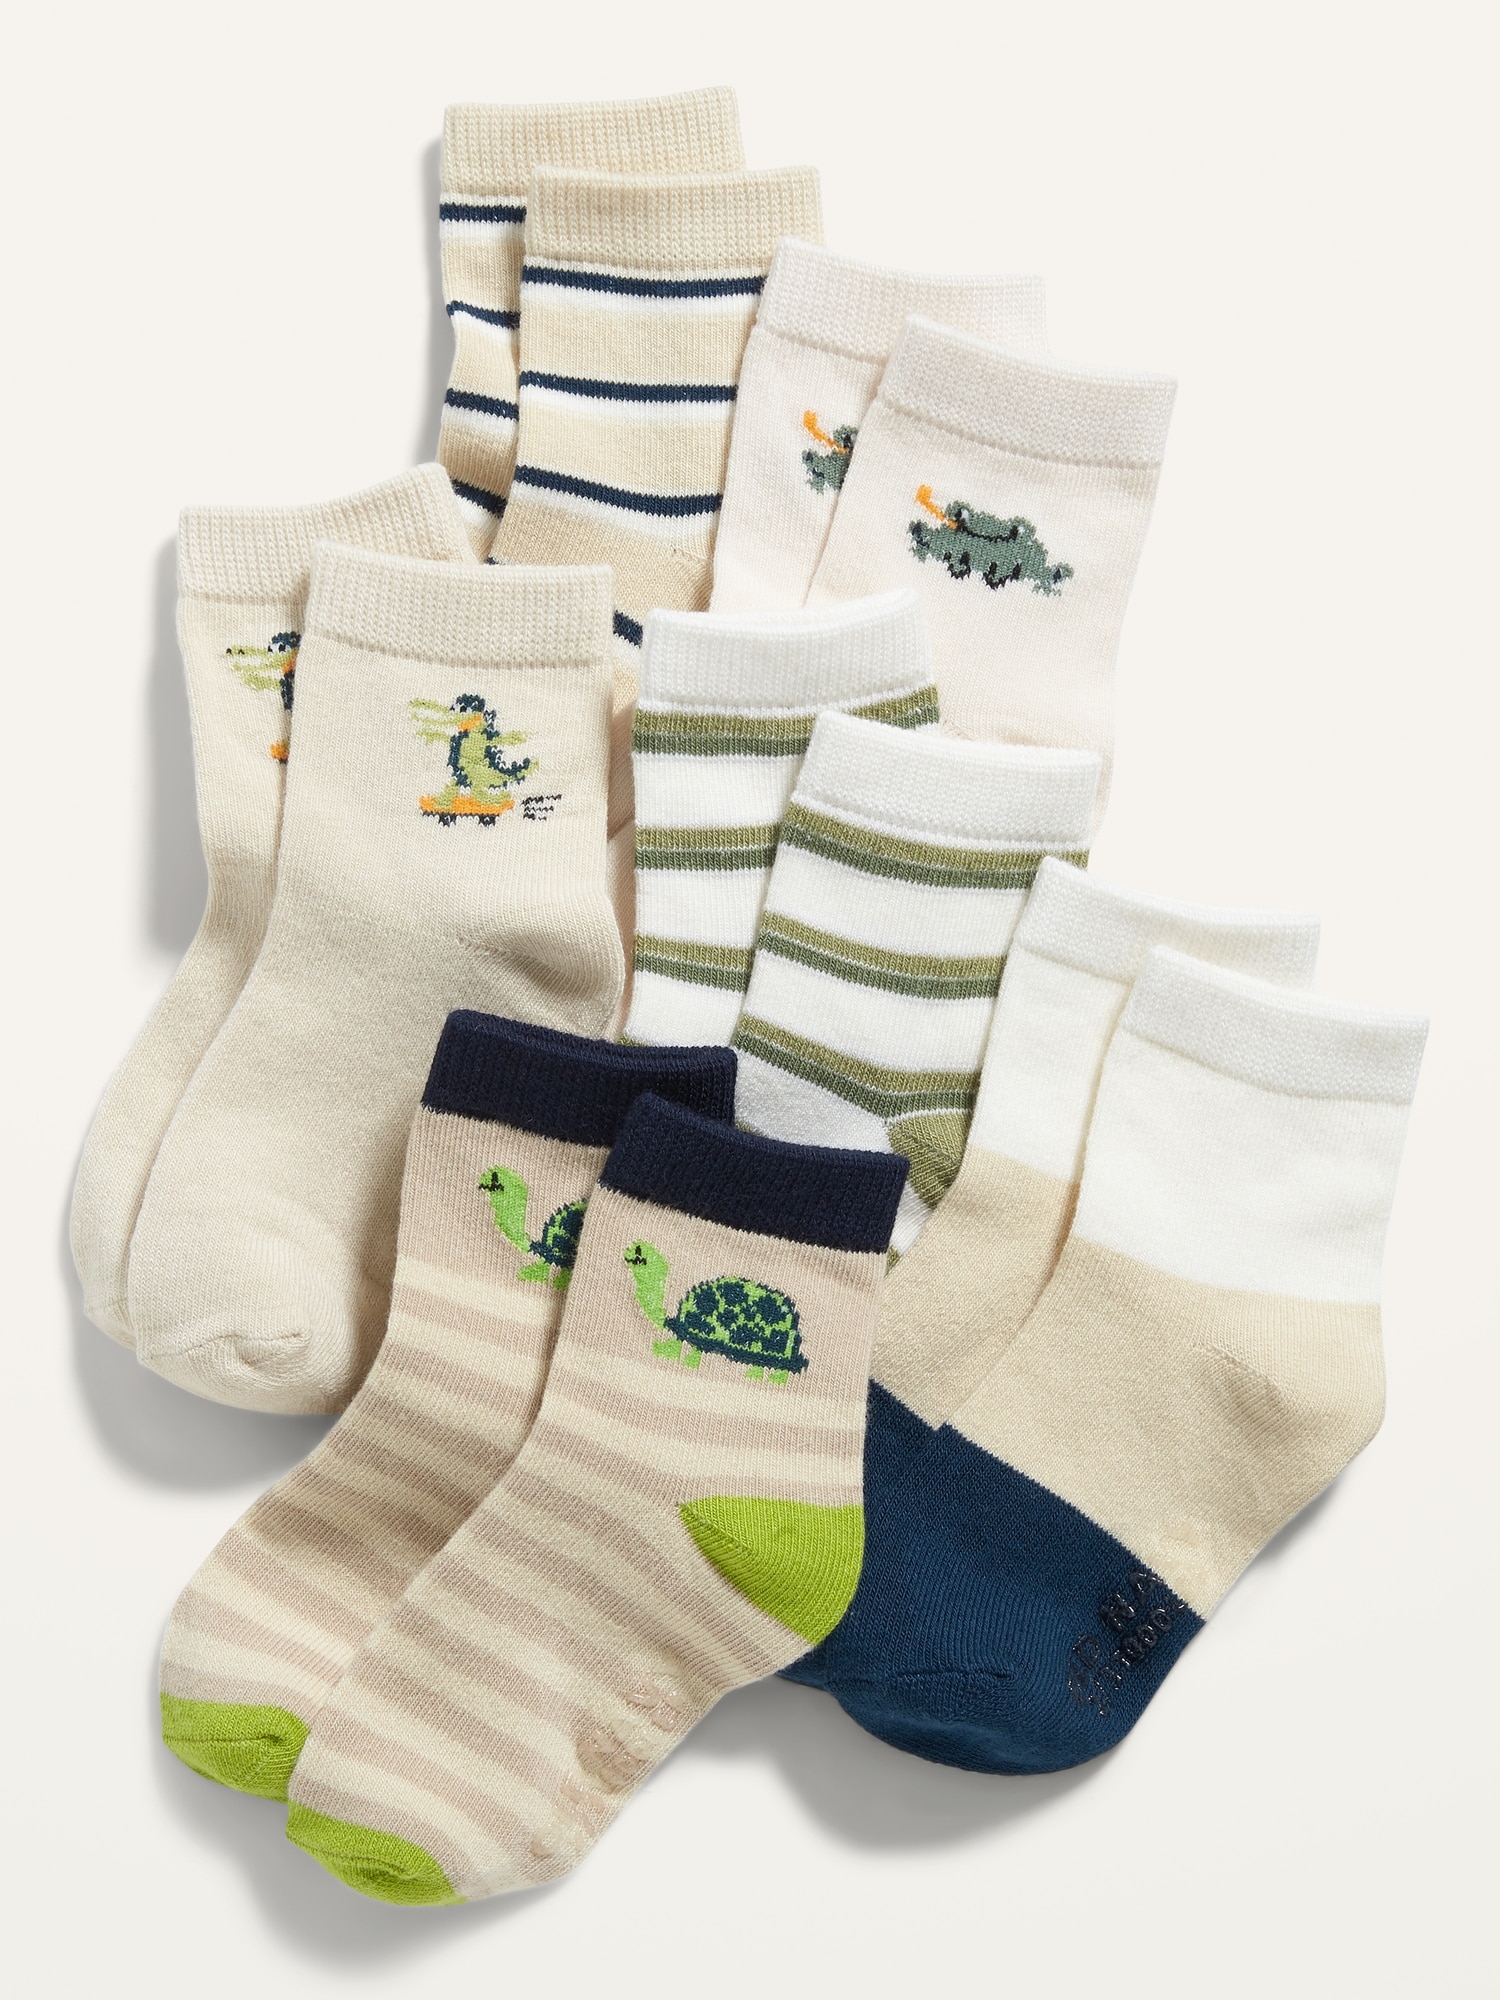 Unisex Crew Socks 6-Pack for Toddler & Baby | Old Navy